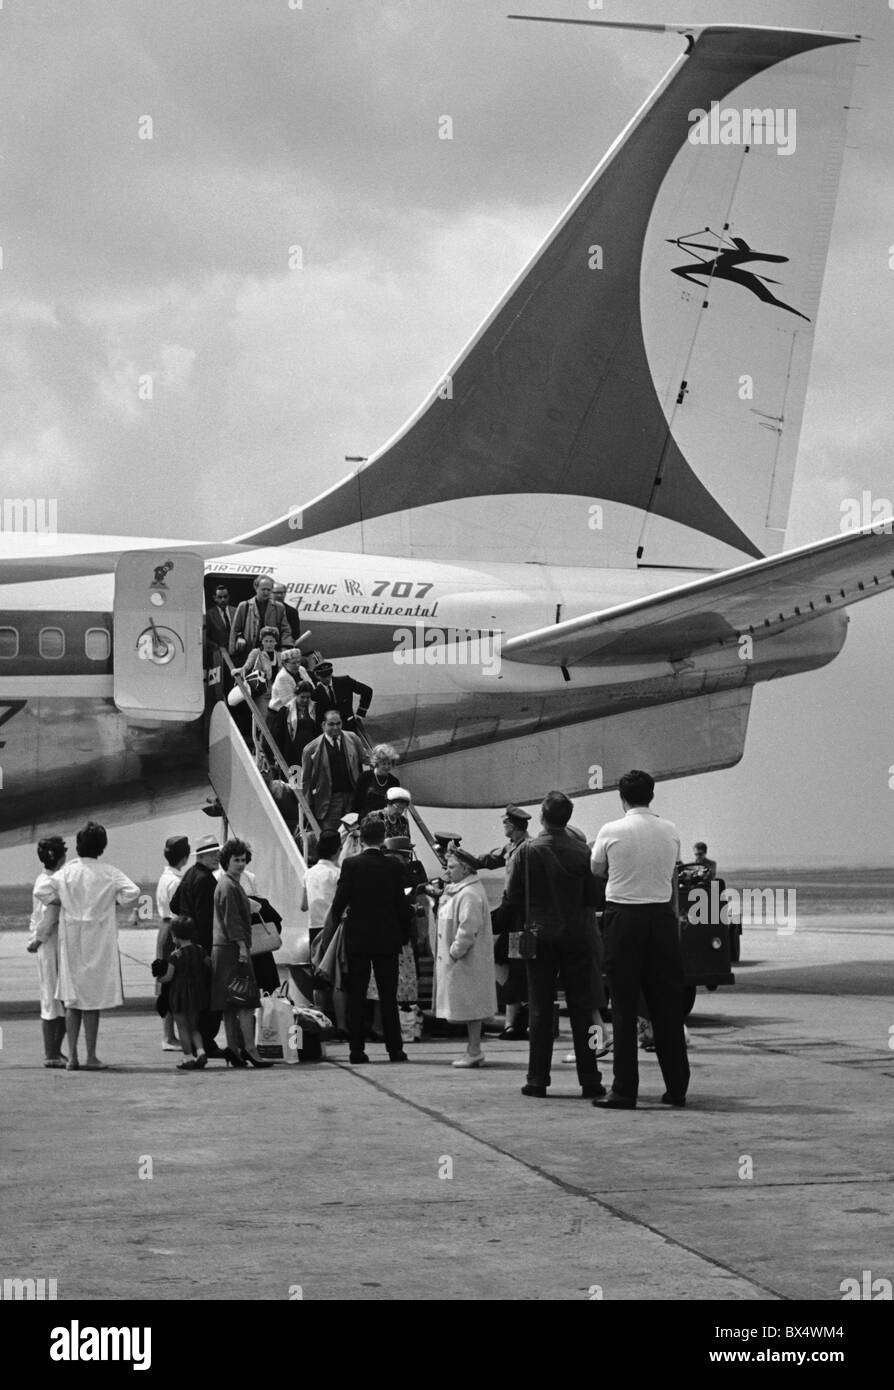 Les passagers d'Air India le débarquement de l'avion à l'aéroport de Ruzyne. Prague. La Tchécoslovaquie 1963. (CTK Photo / Bedrich Krejci) Banque D'Images